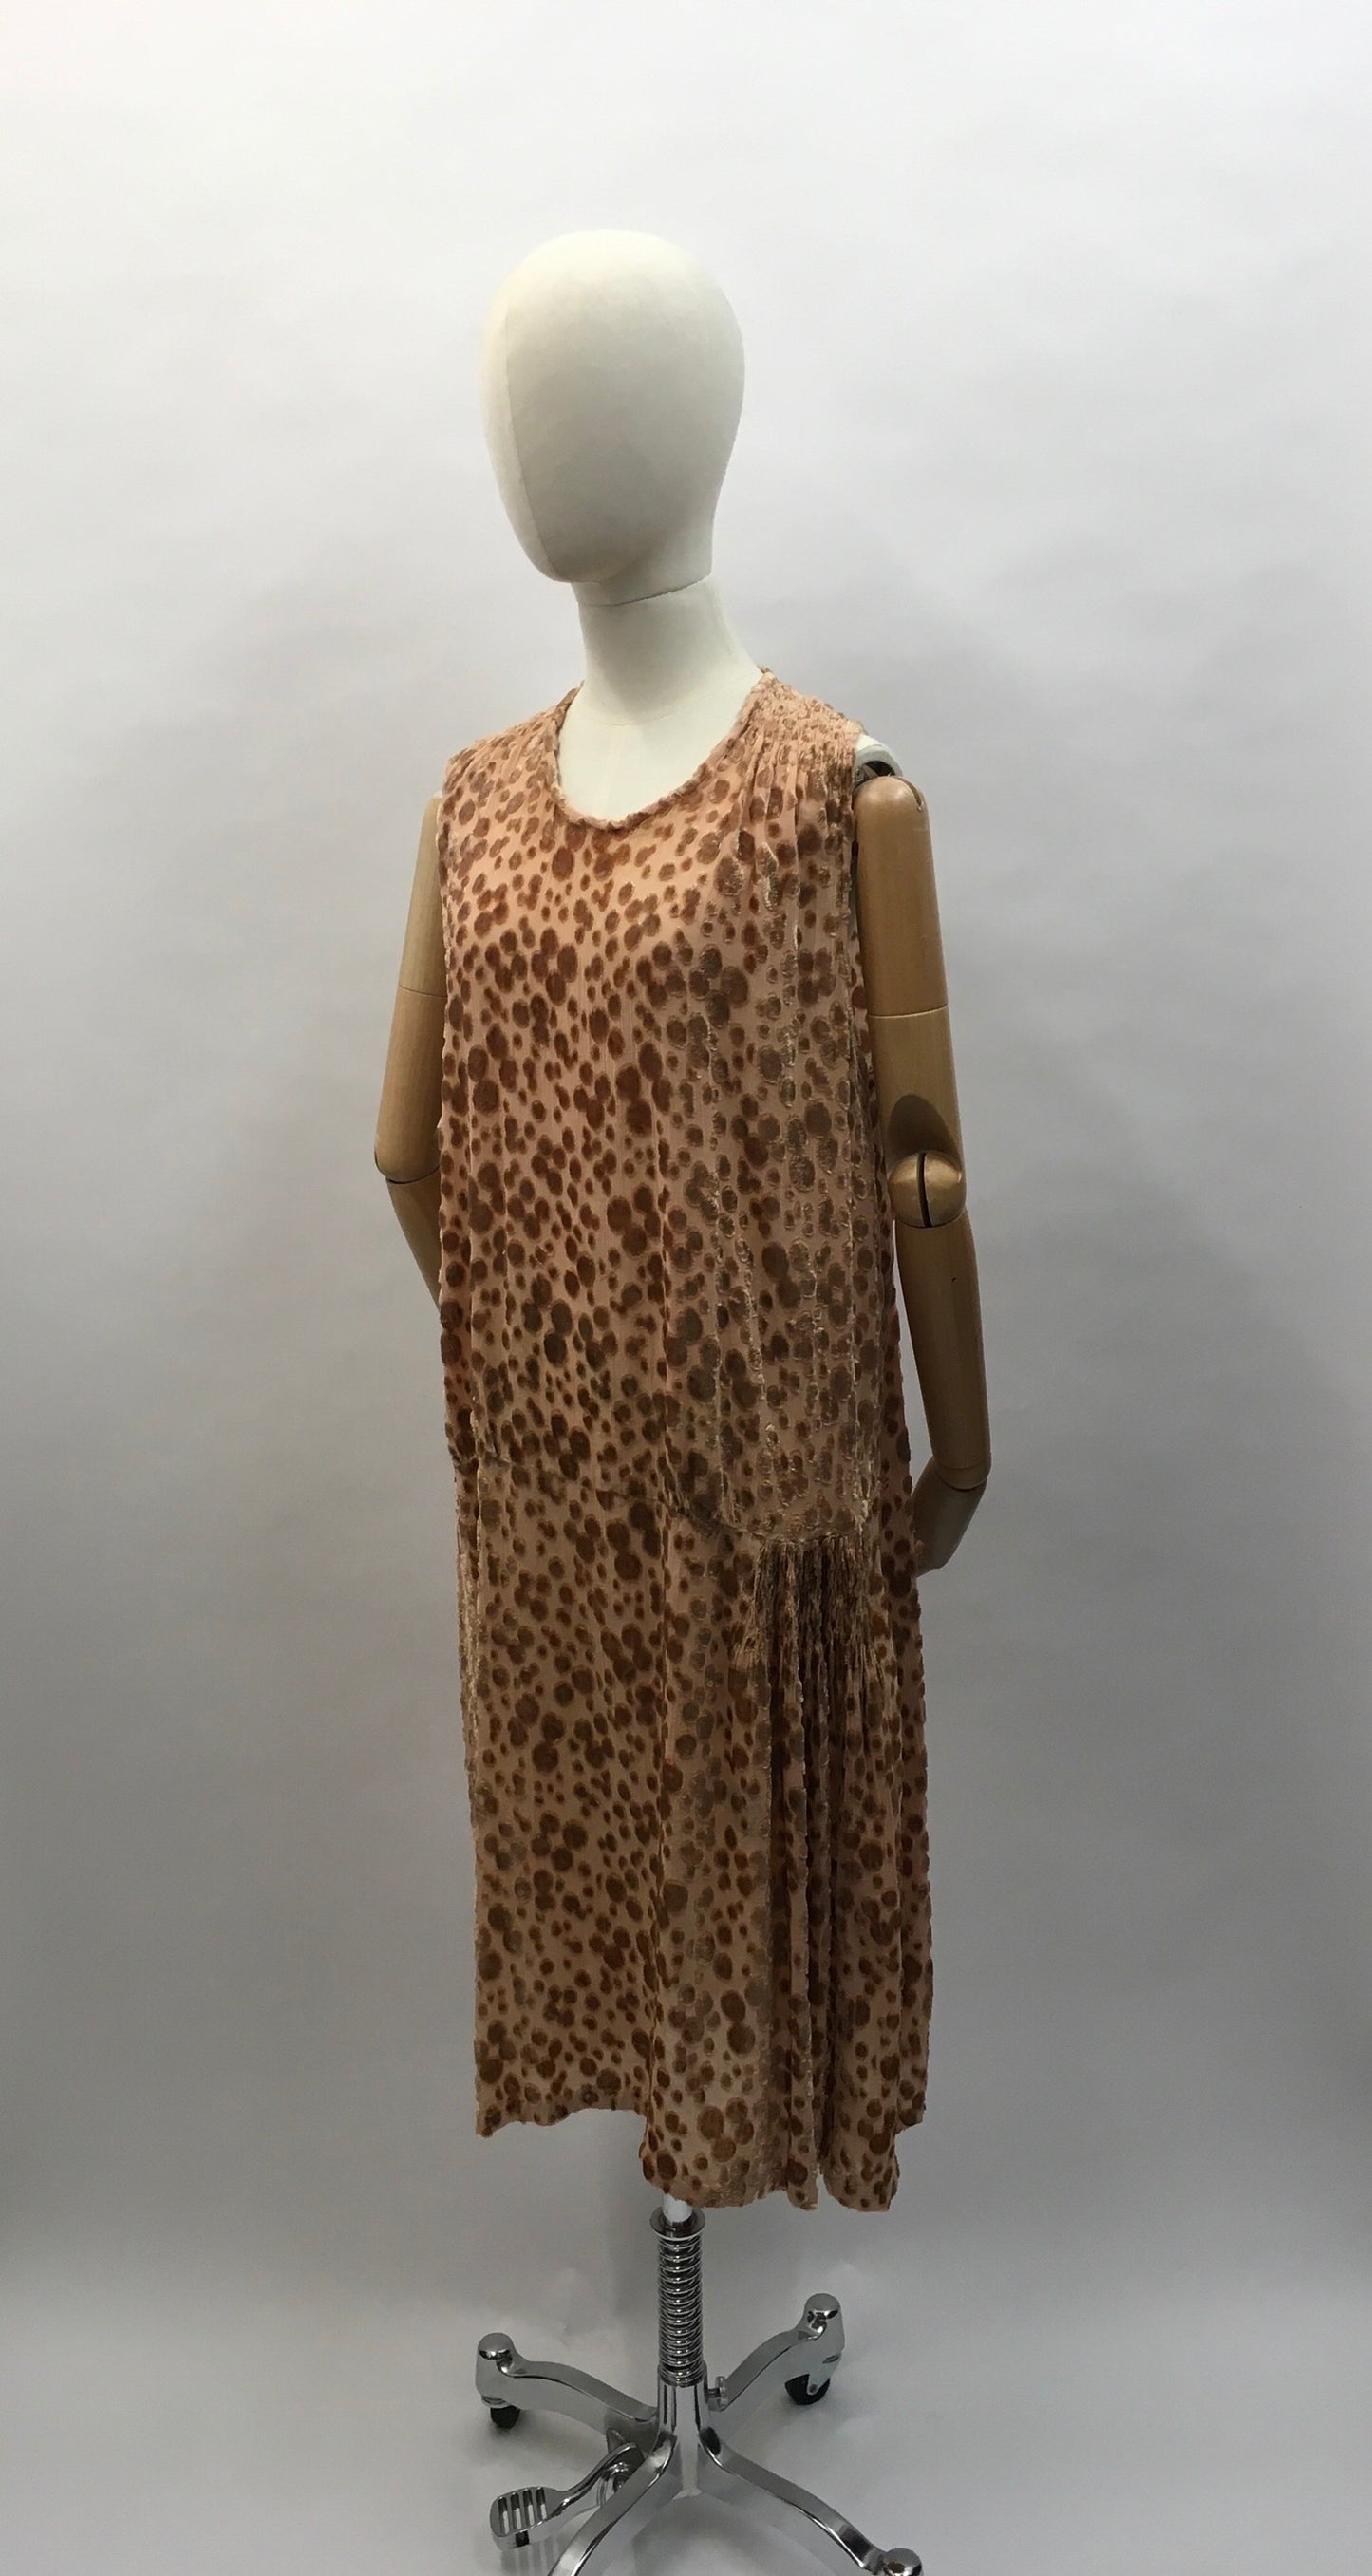 Original 1920’s Devore Dress - In a soft beige tone featuring ruched detailing